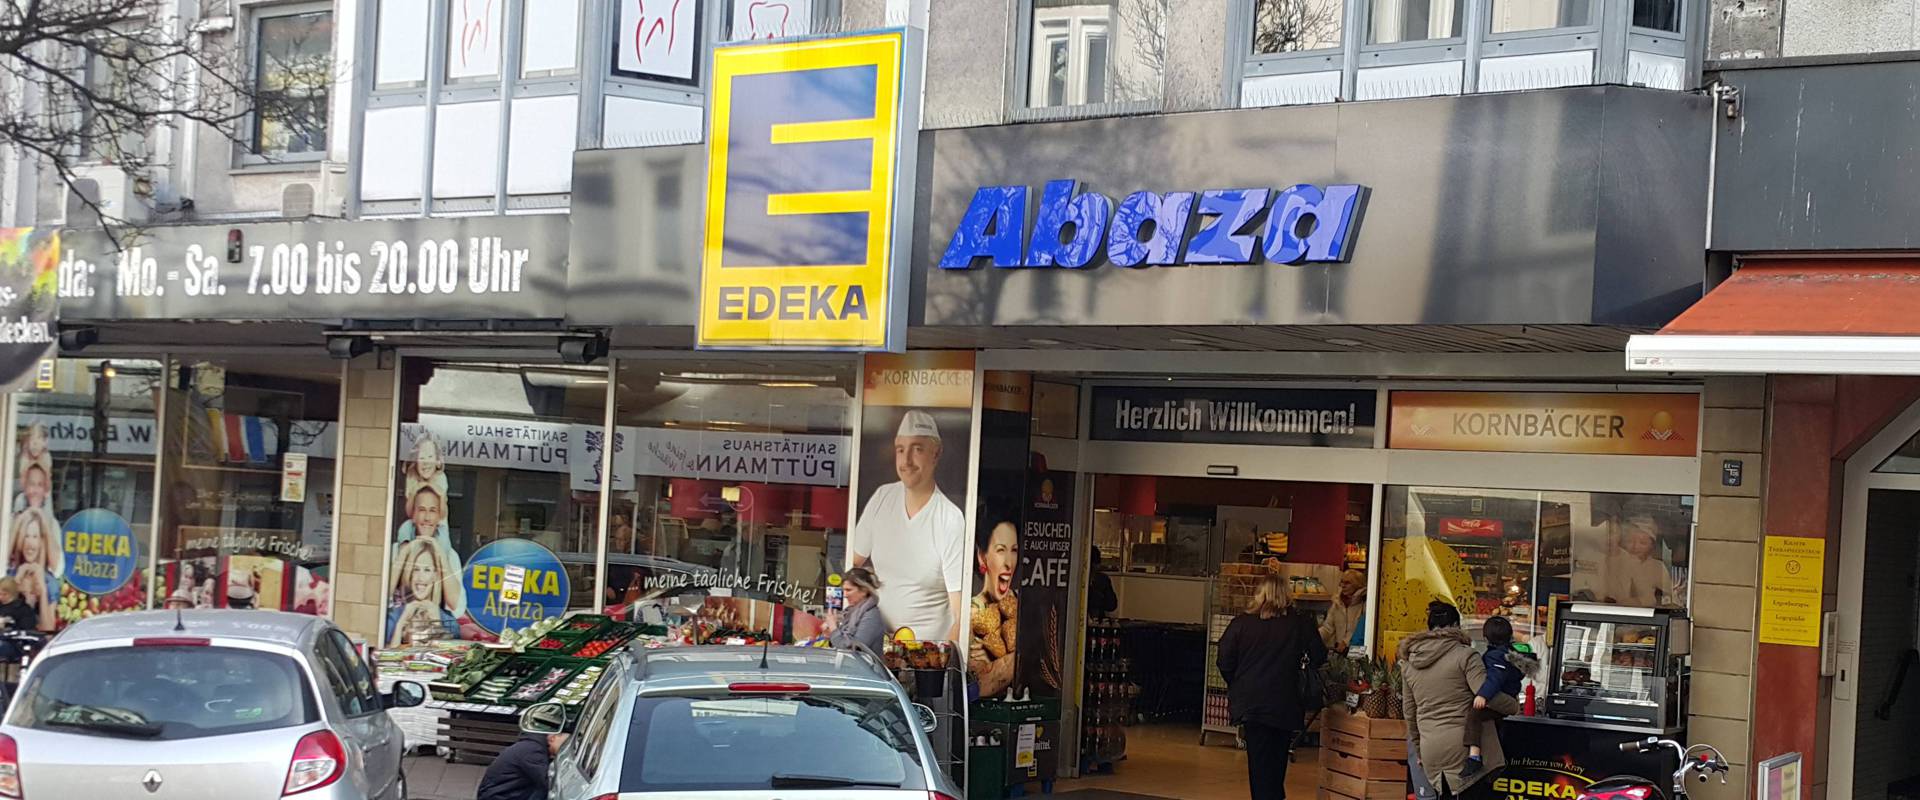 Ihr EDEKA-Markt Zur Beckhove 27-29